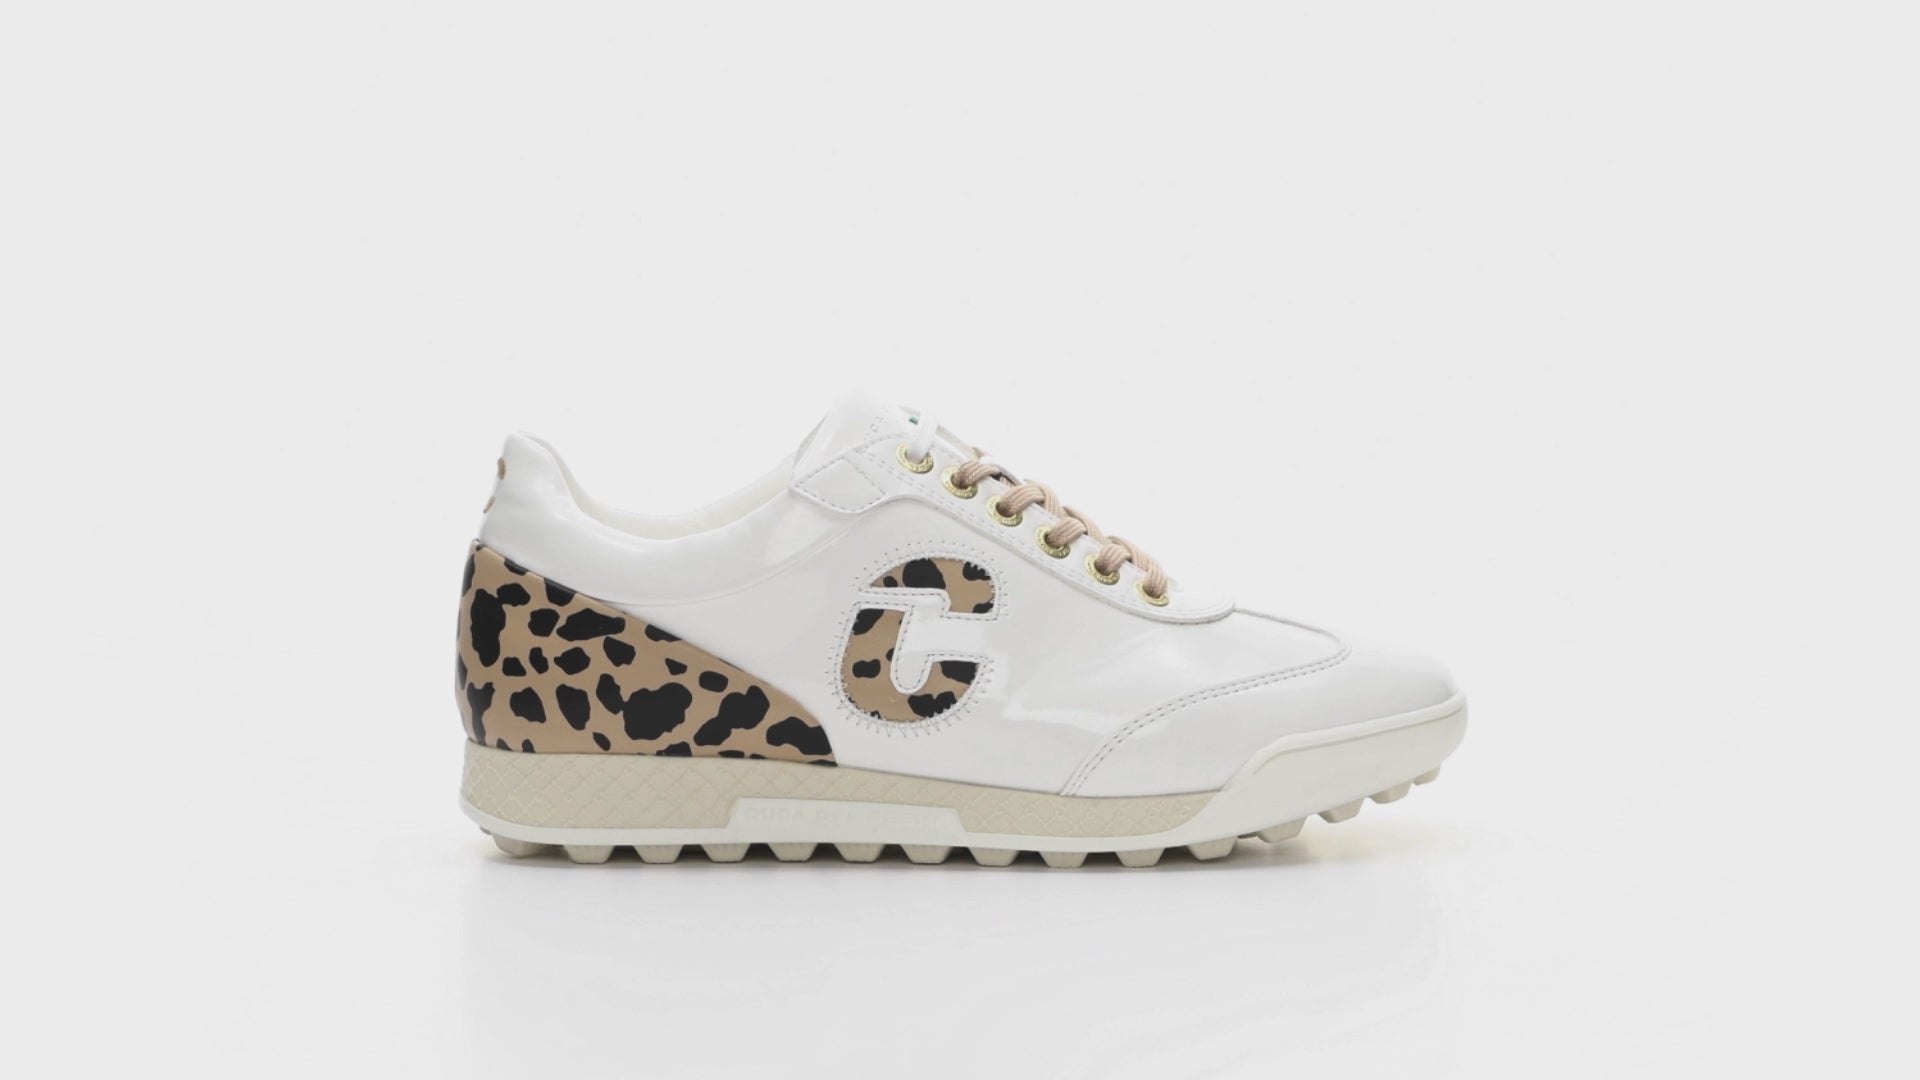 King Cheetah Weiß Damen golfschuhe